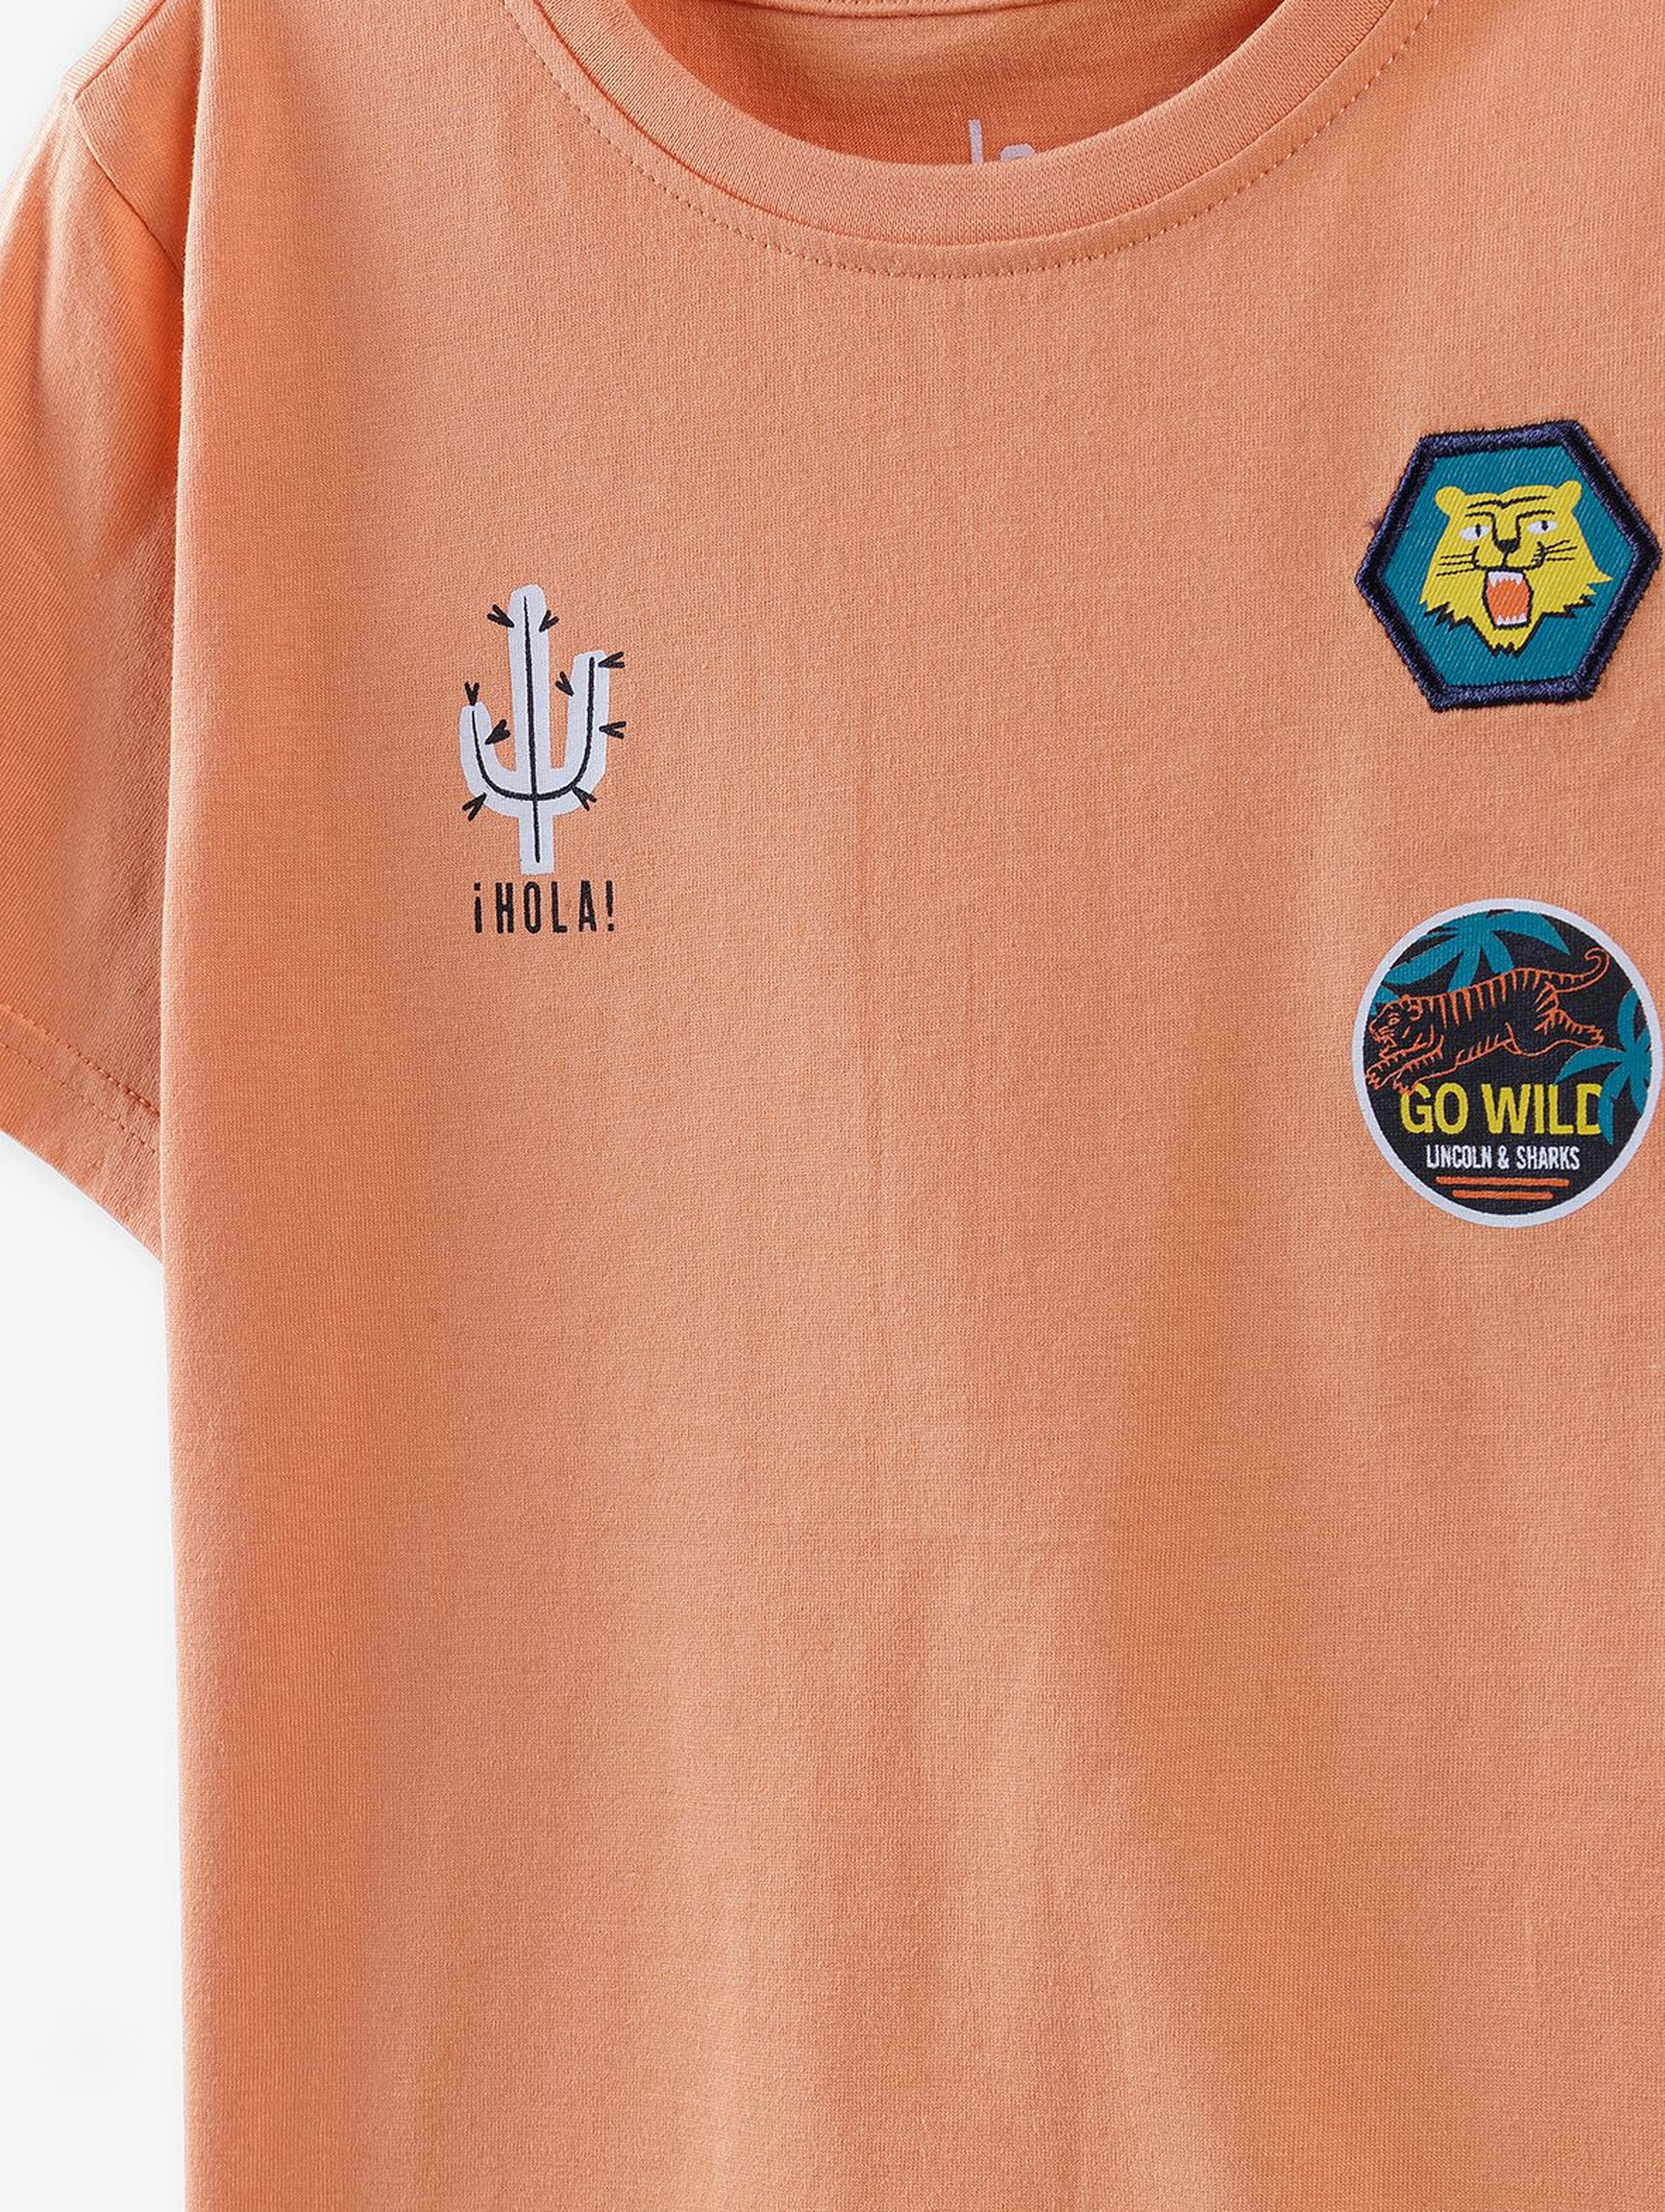 T-shirt chłopięcy pomarańczowy z ozdobnymi naszywkami